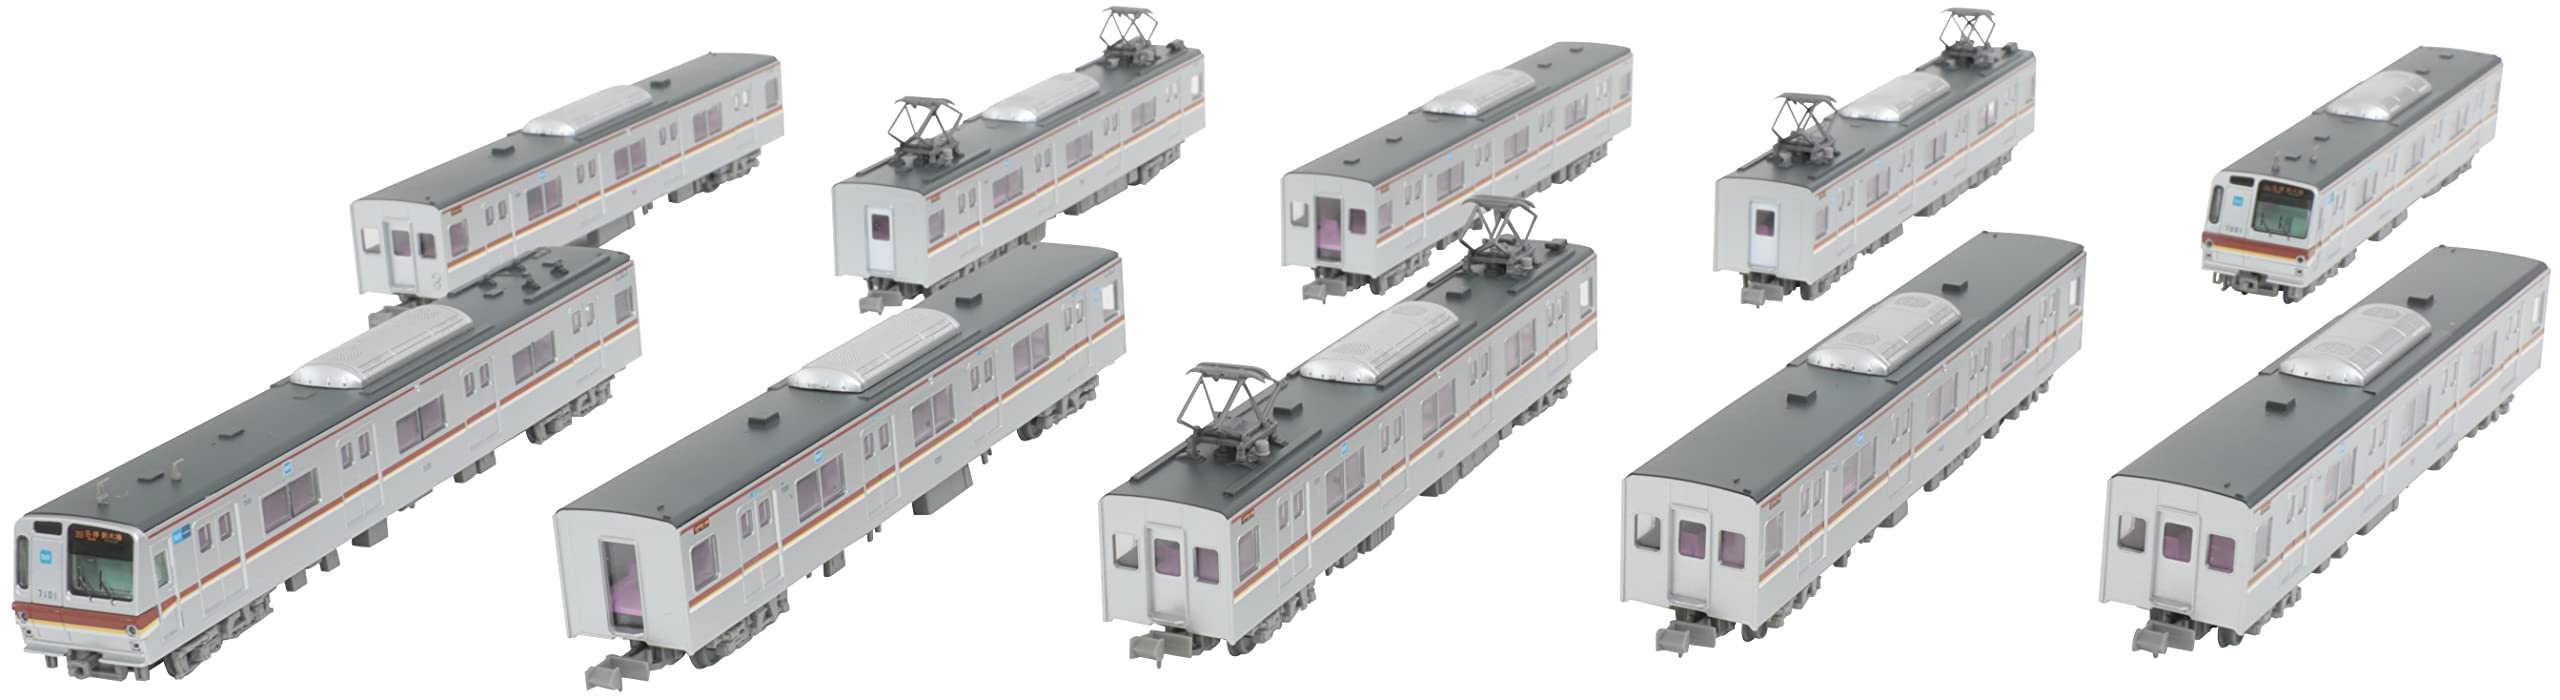 Tomytec Railway Collection Tokyo Metro 7000 Yurakucho & Fukutoshin Line 10-Car Set Japan Diorama 319887